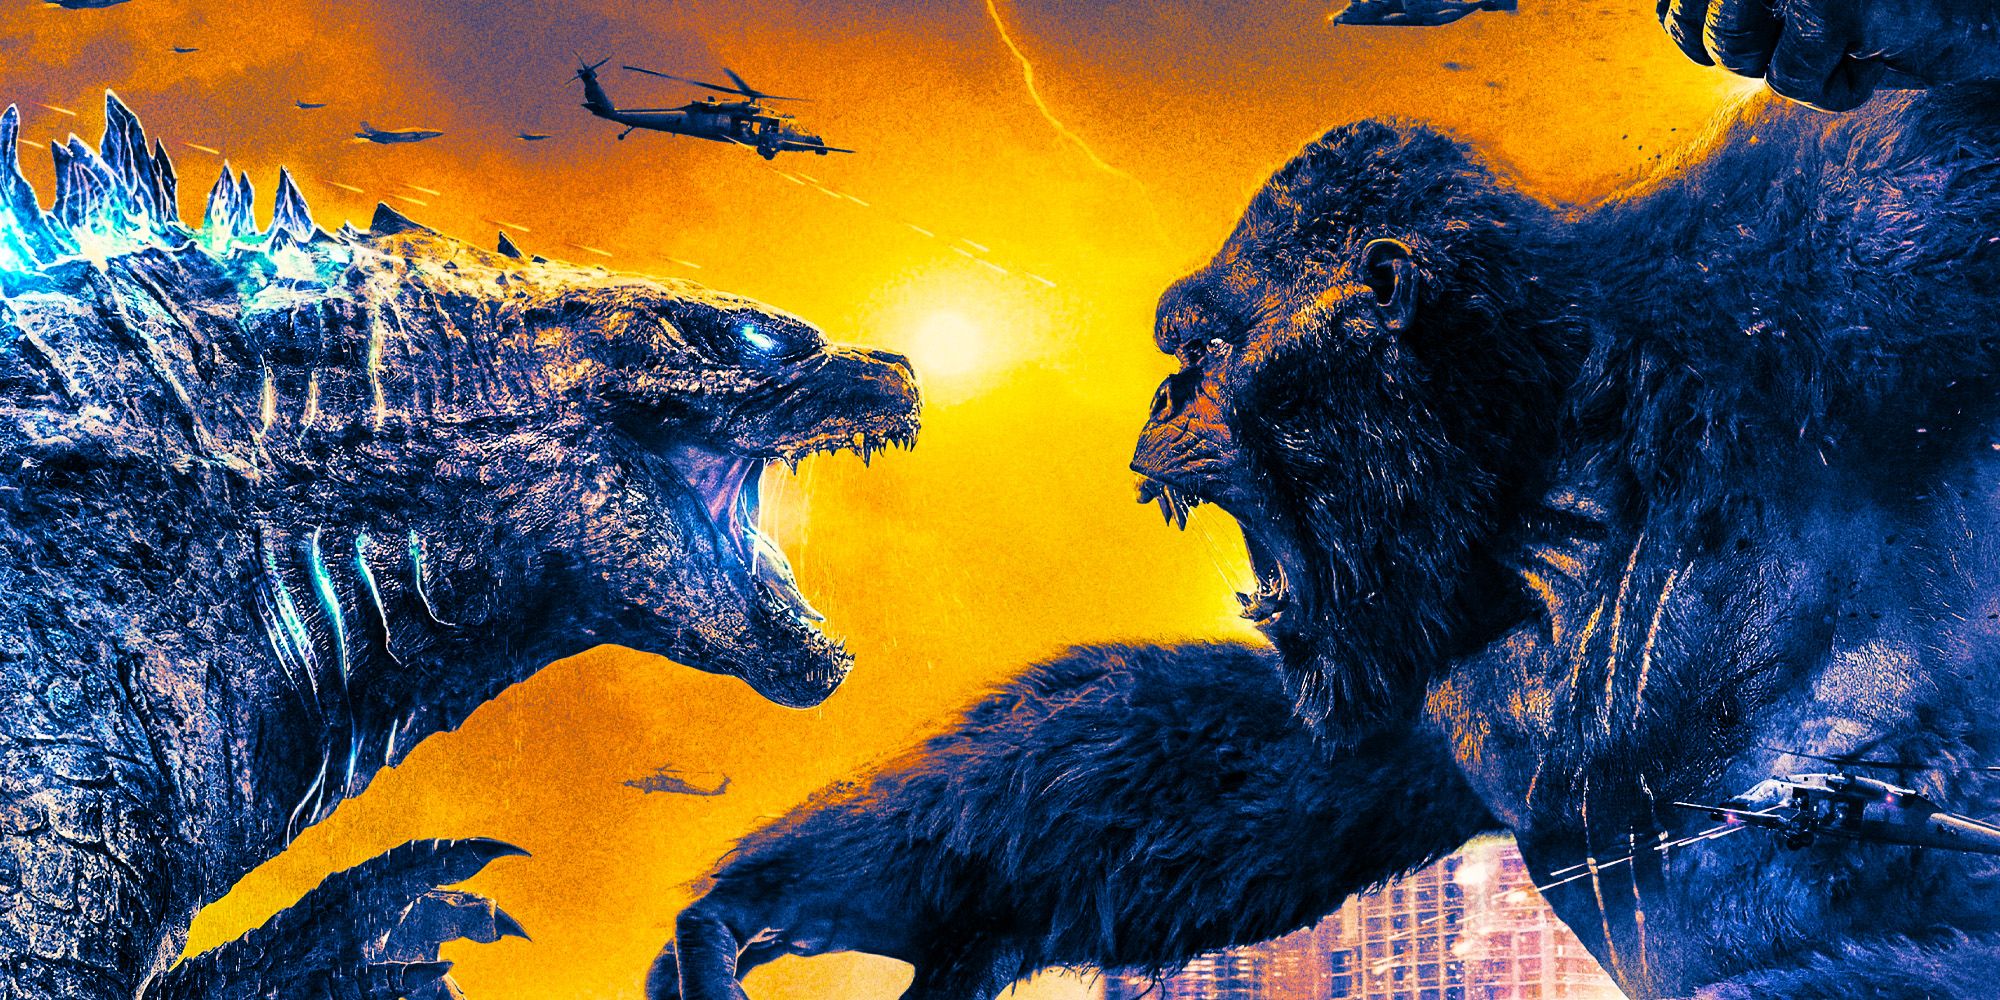 Godzilla vs kong 2 monsterverse rematch